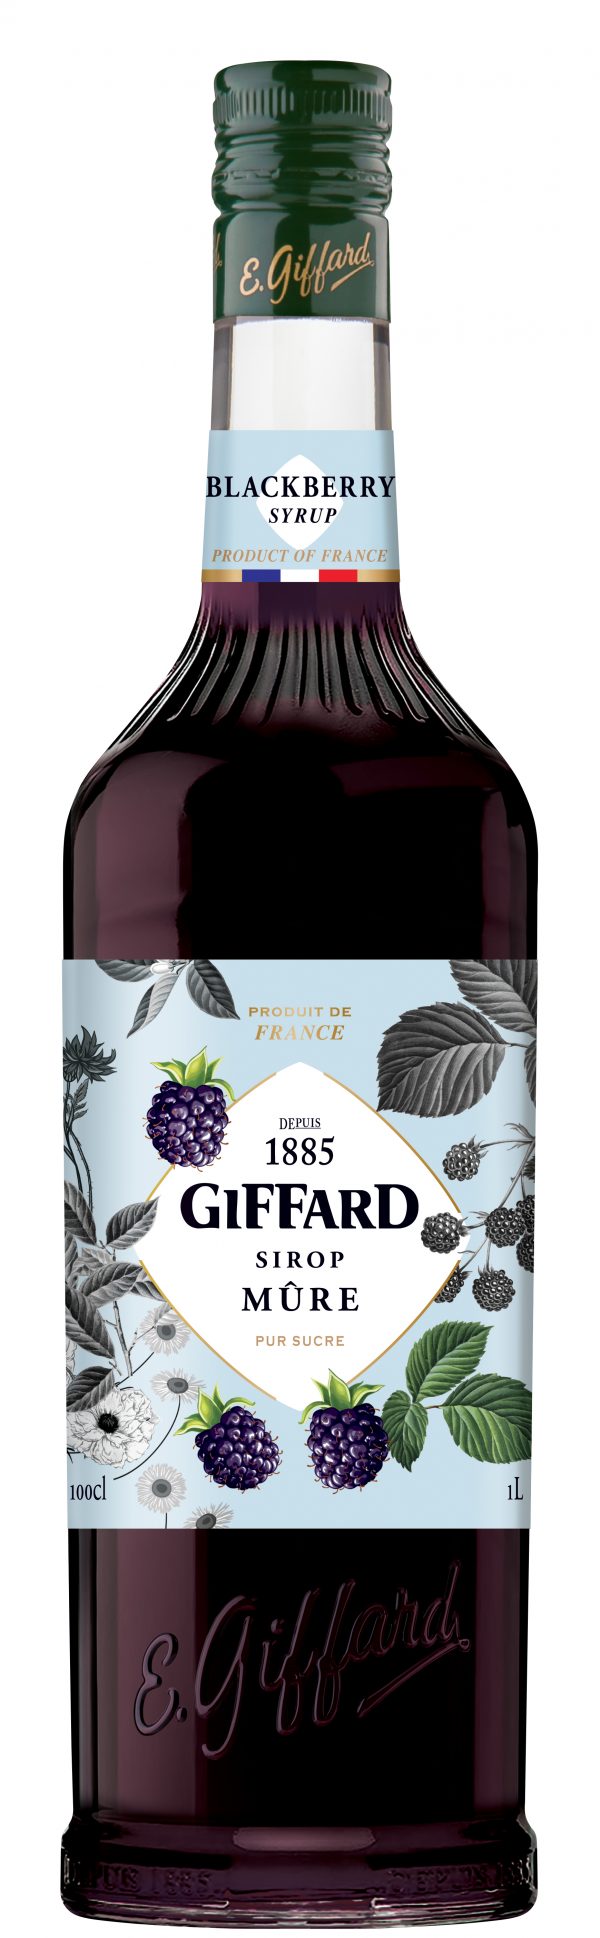 Giffard Blackberry Syrup